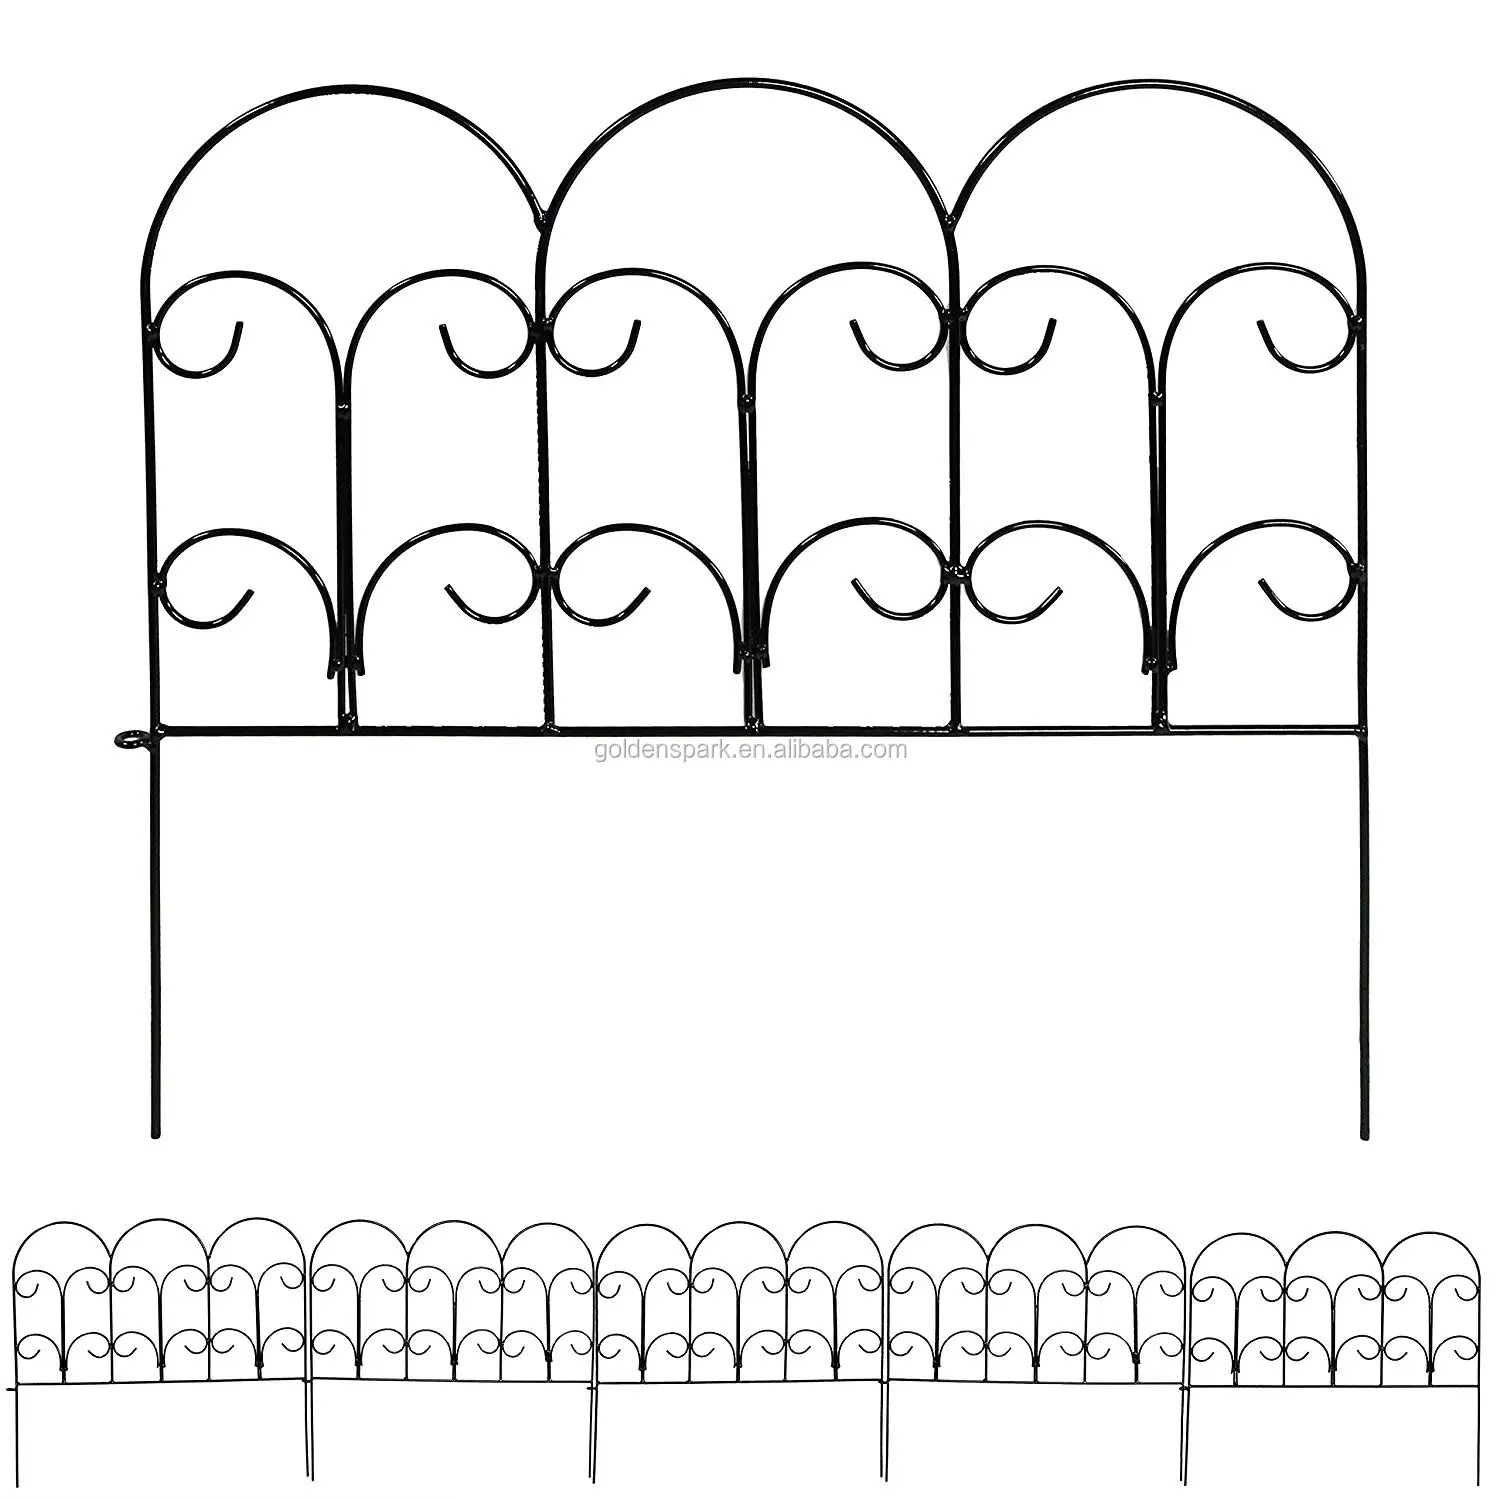 5 件维多利亚边境围栏套装,装饰金属花园围栏, 每件 16 英寸 × 18